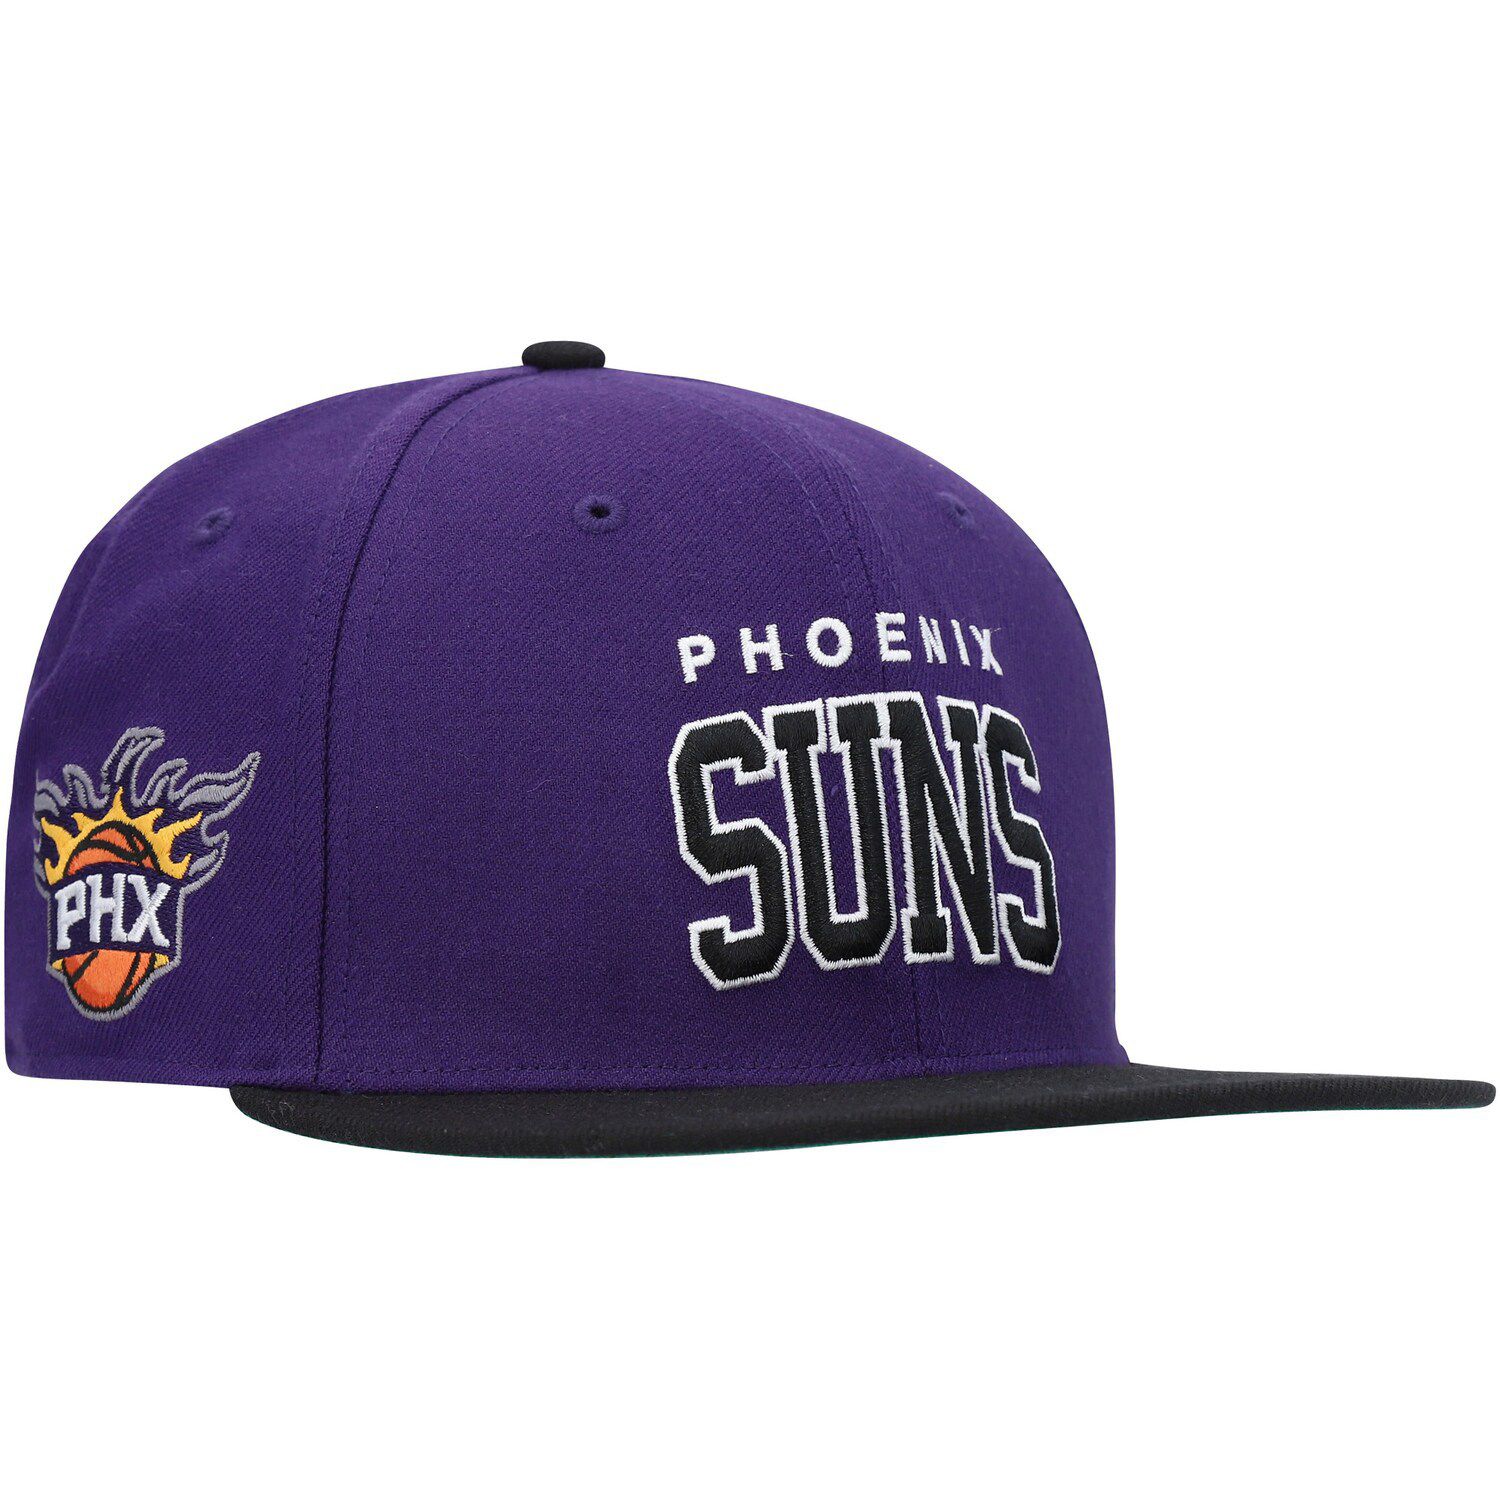 Image for Unbranded Men's '47 Purple Phoenix Suns Blockshed Captain Snapback Hat at Kohl's.